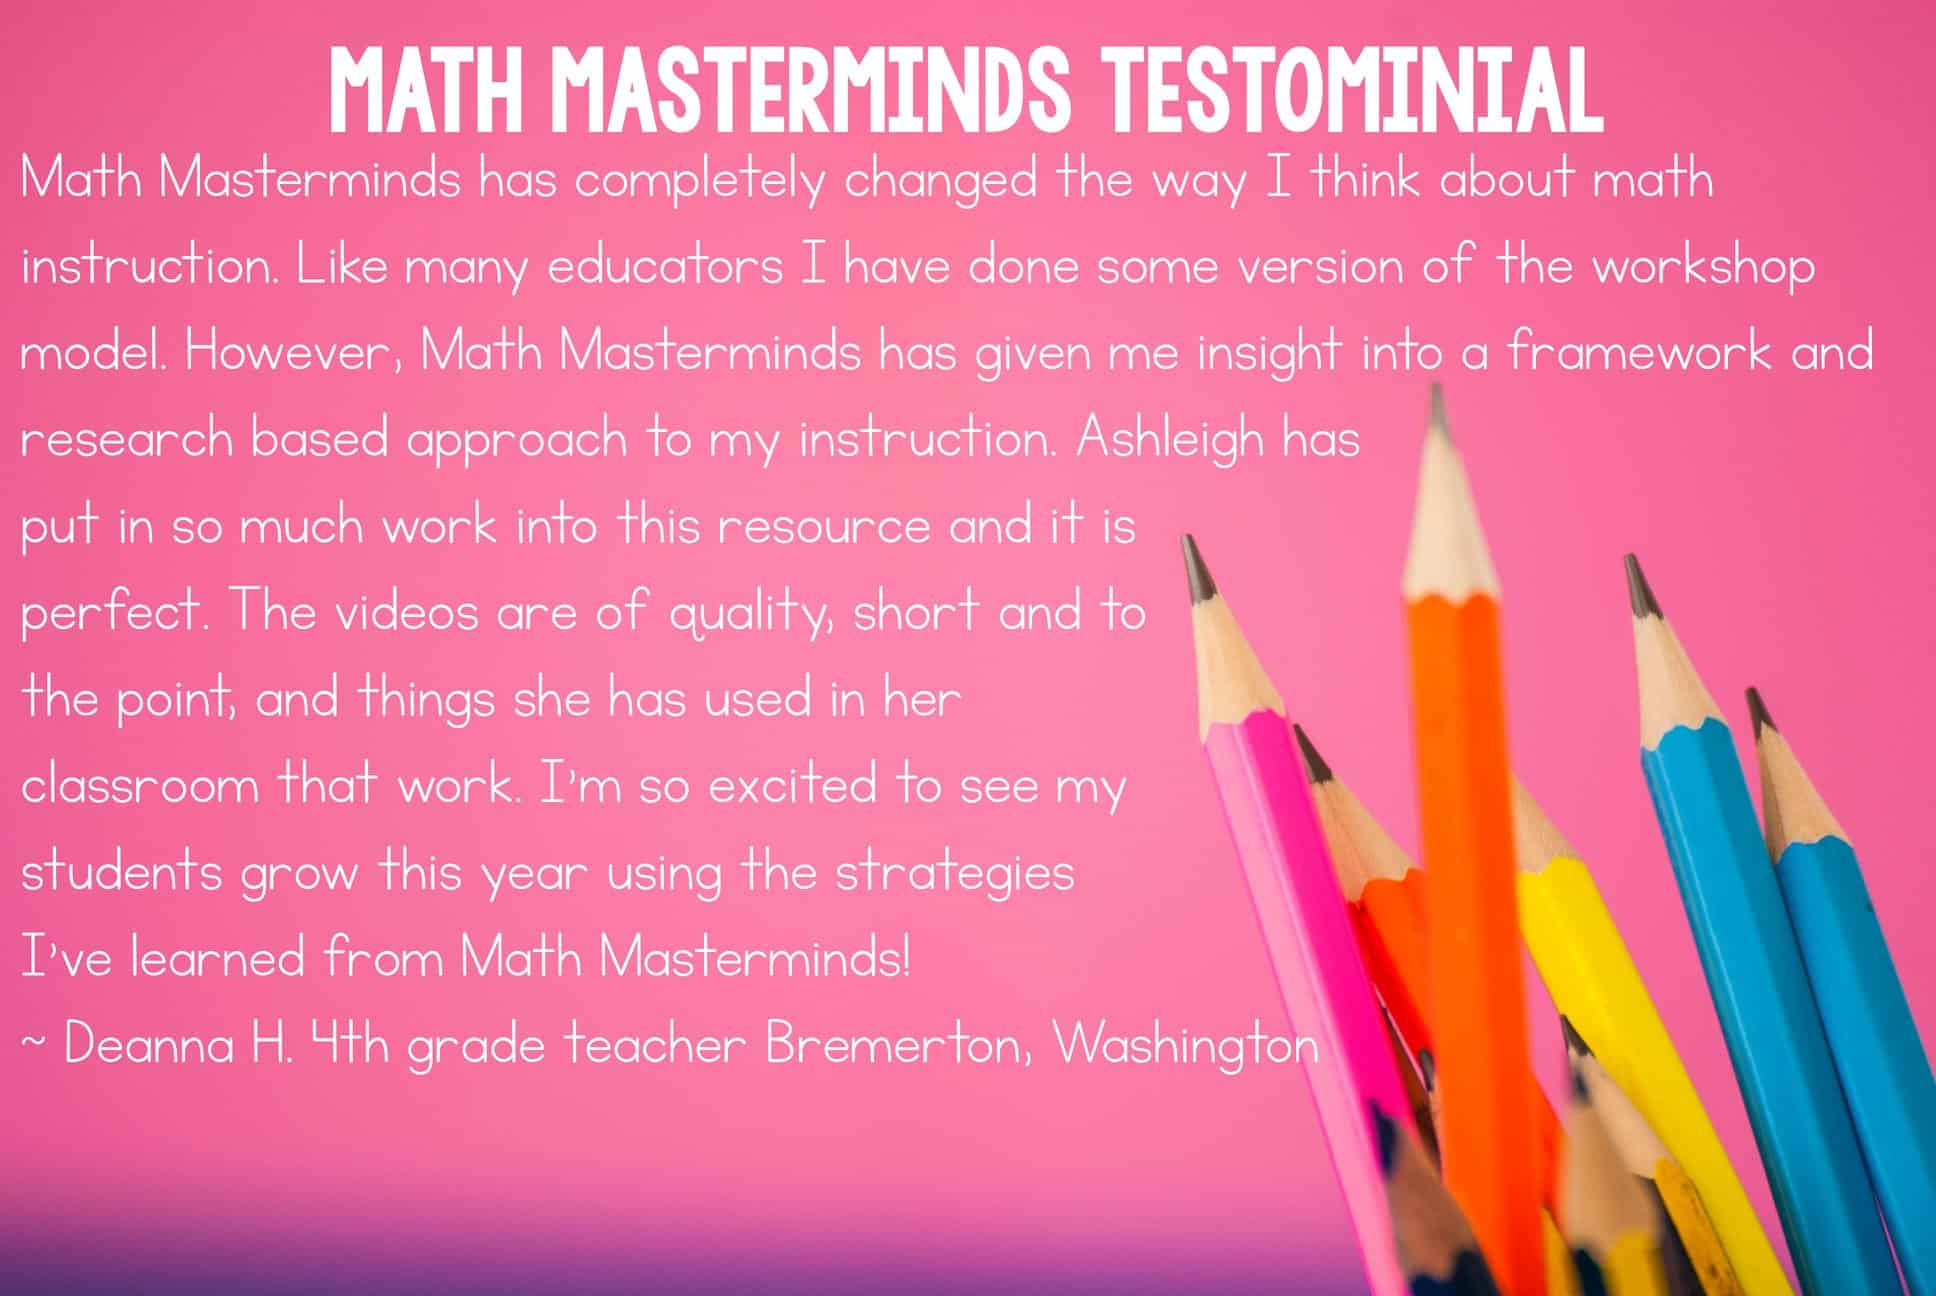 Math Masterminds Testimonial image